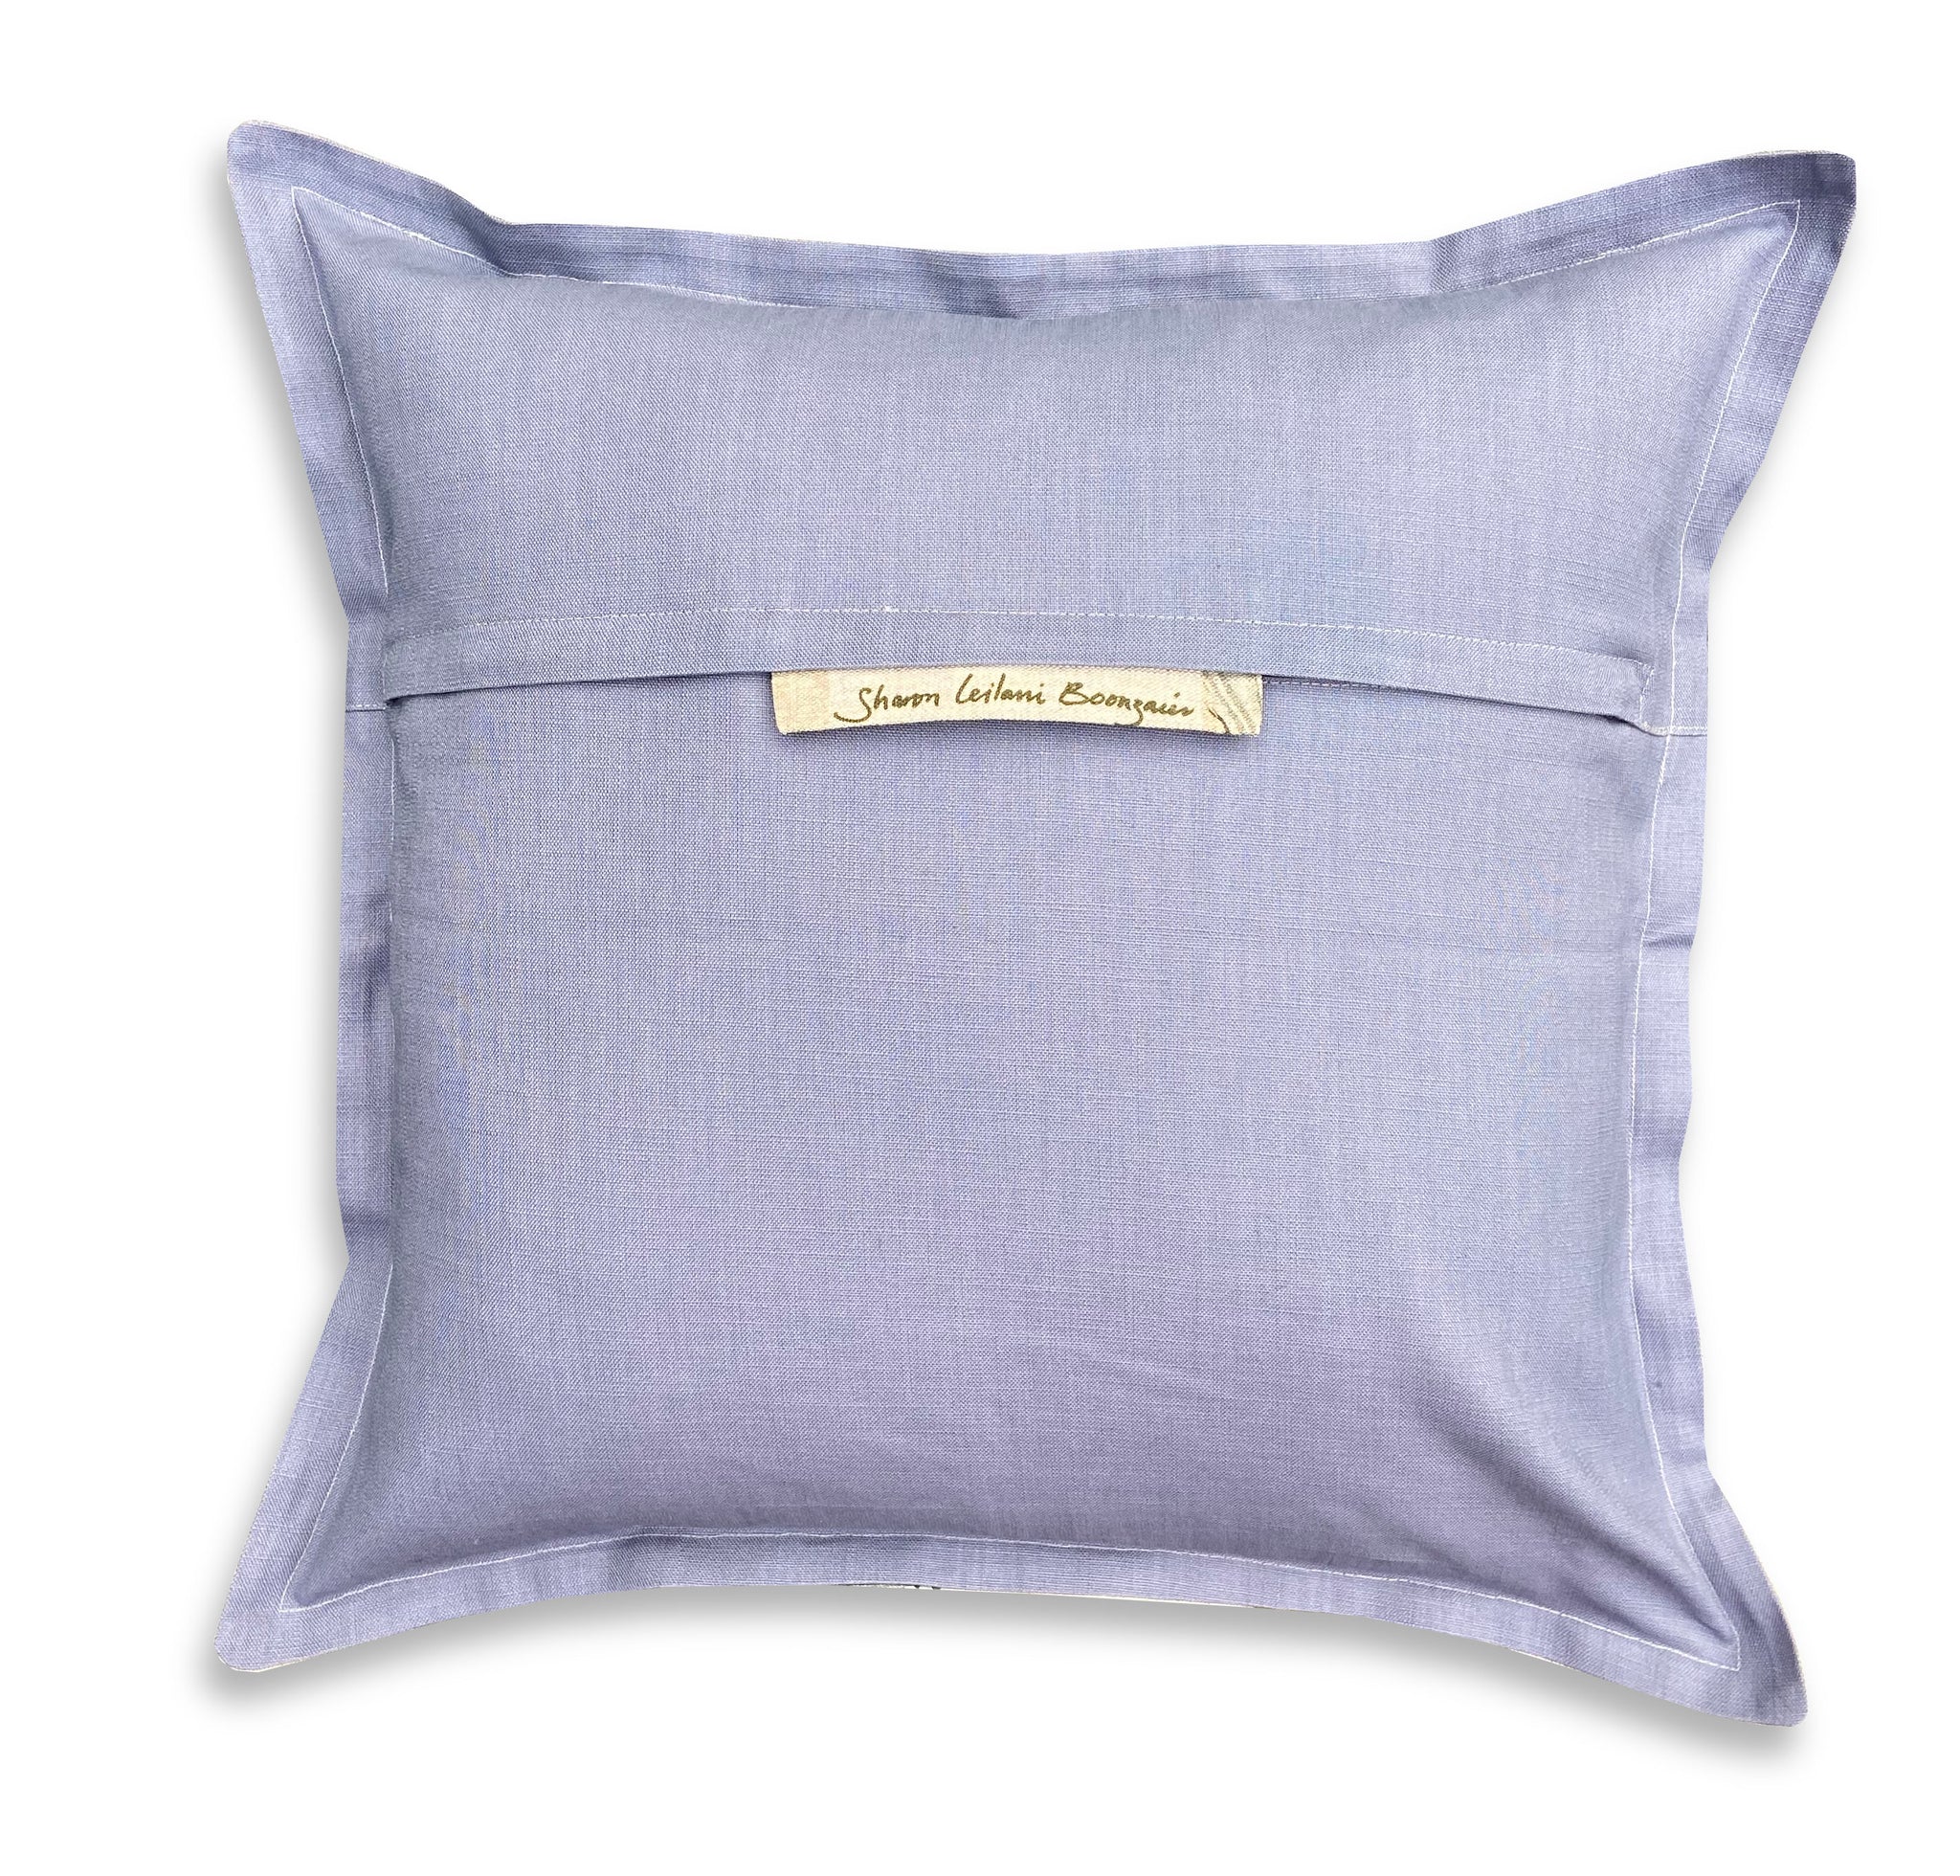 Koi Cushion Cover, Standard, Belgian Linen